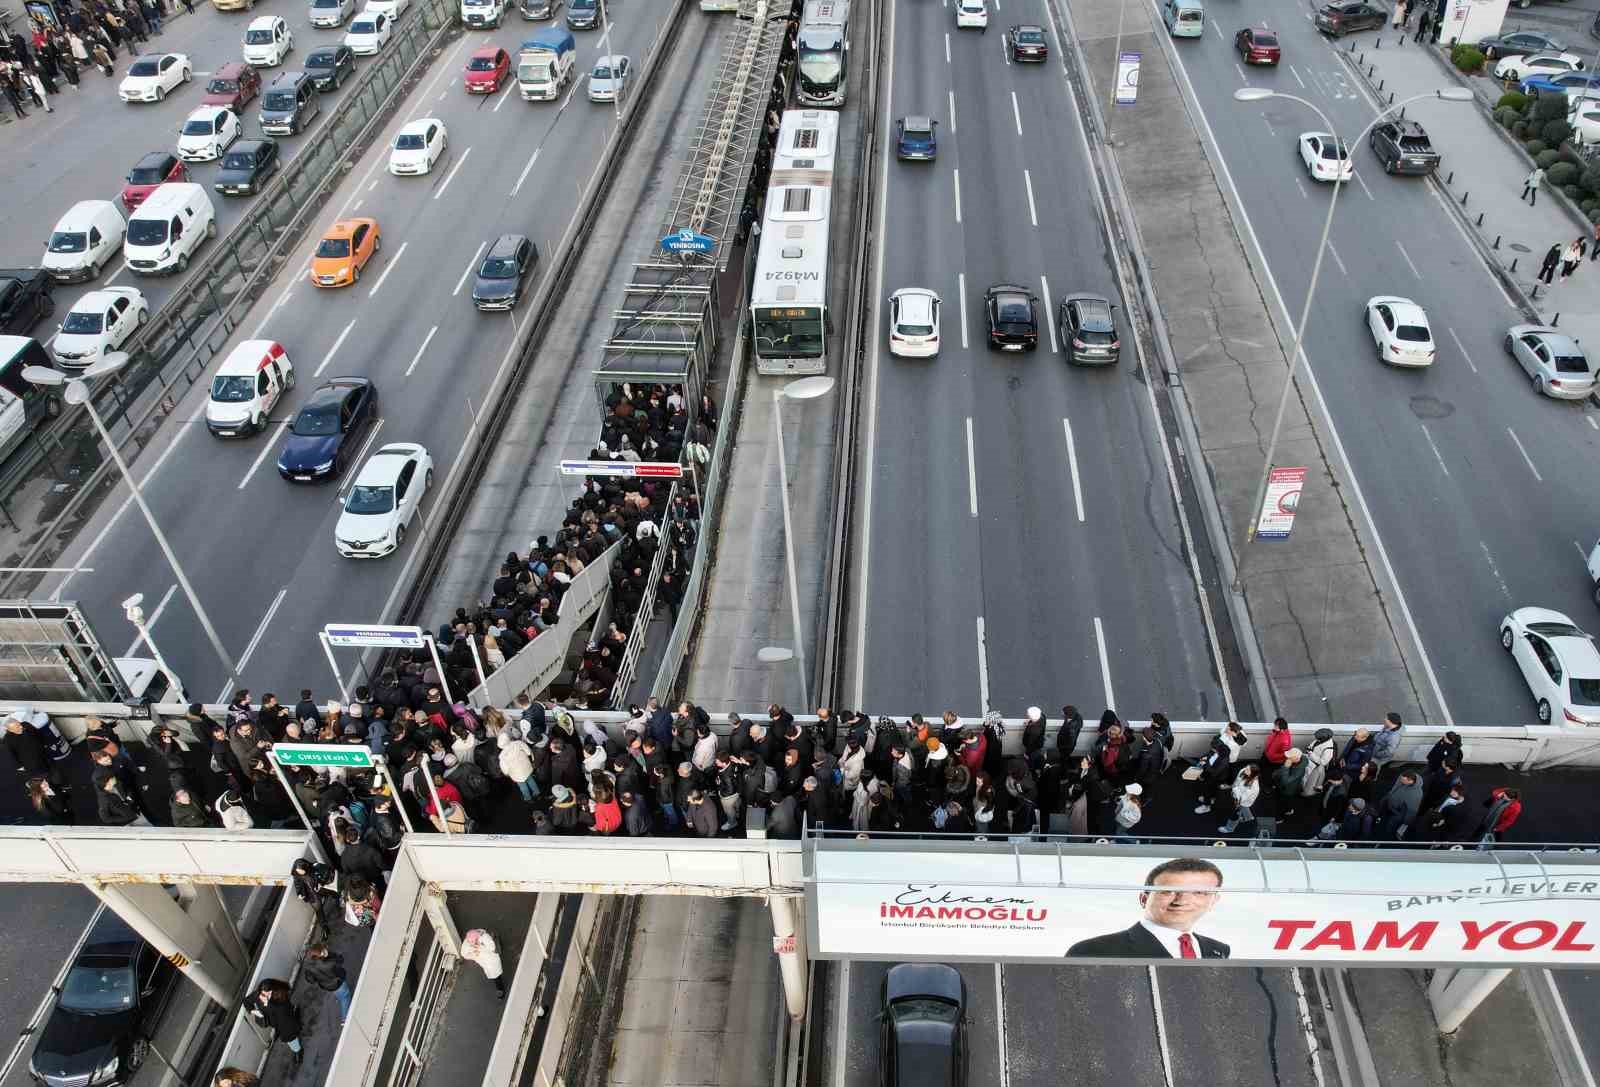 İstanbul’da metrobüs kuyruğuyla denk gelen seçim afişi
